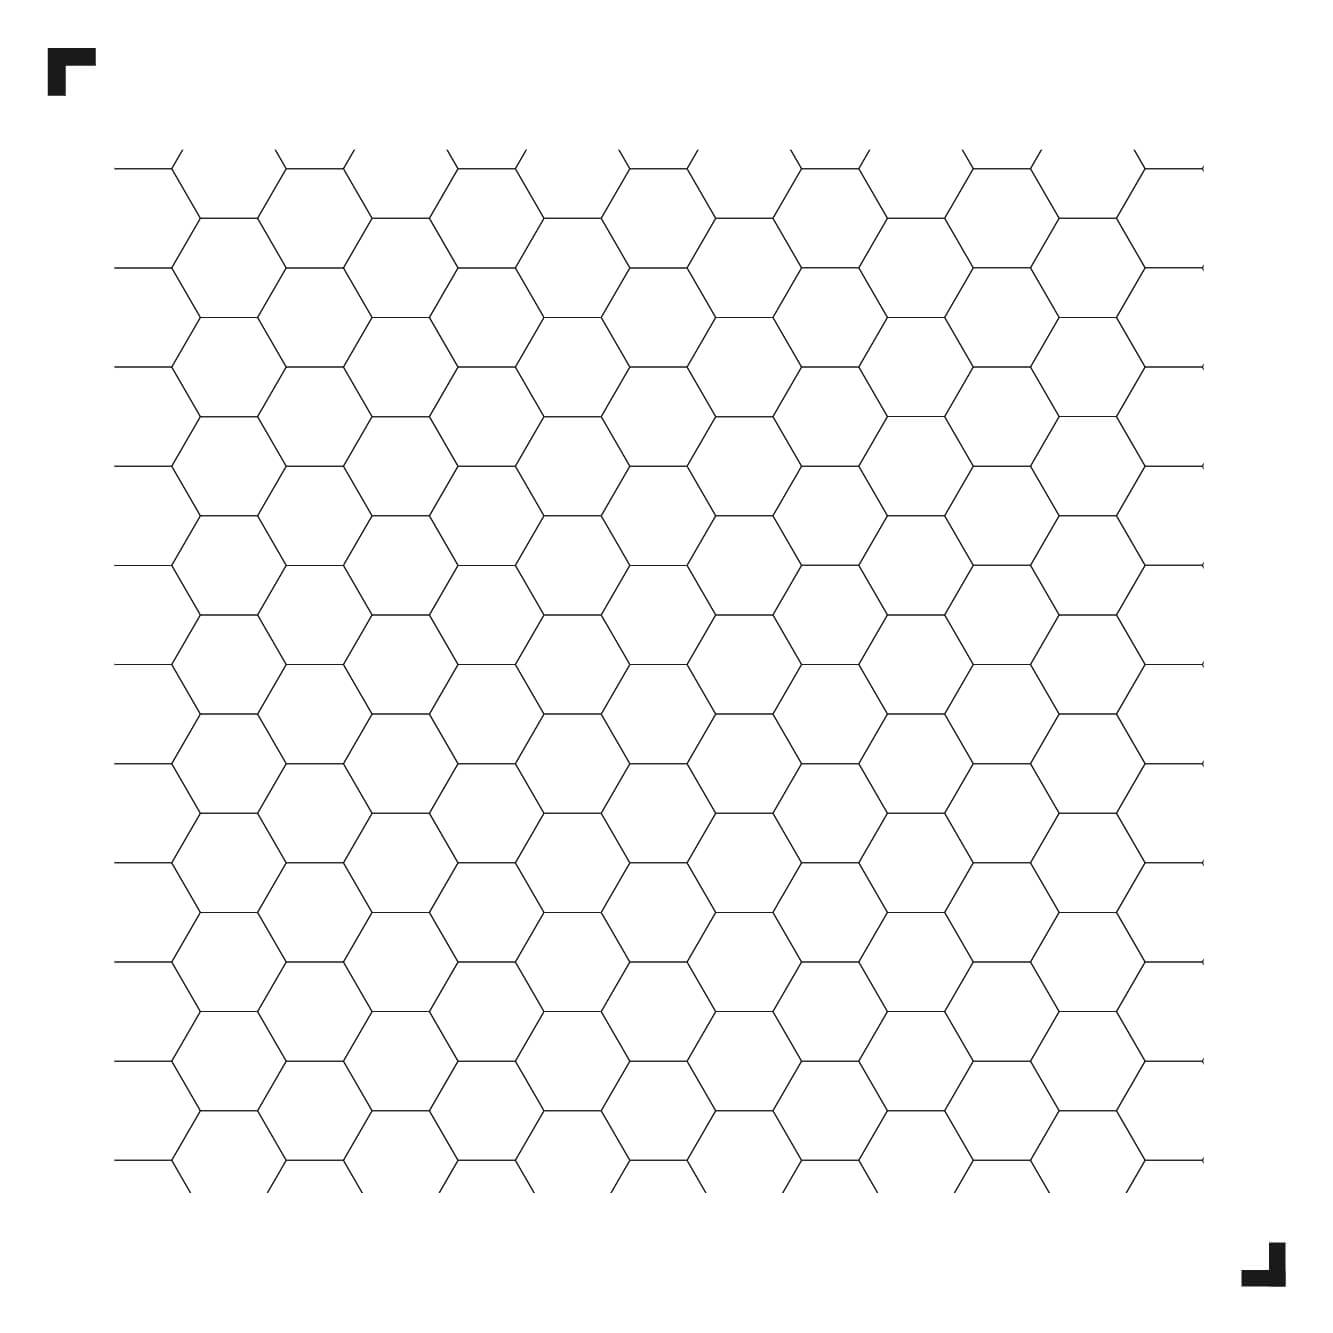 zwart-wit tekening van het Hexagon patroon - Moduleo Moods - luxe vinyl tegels - Creatieve vloeren